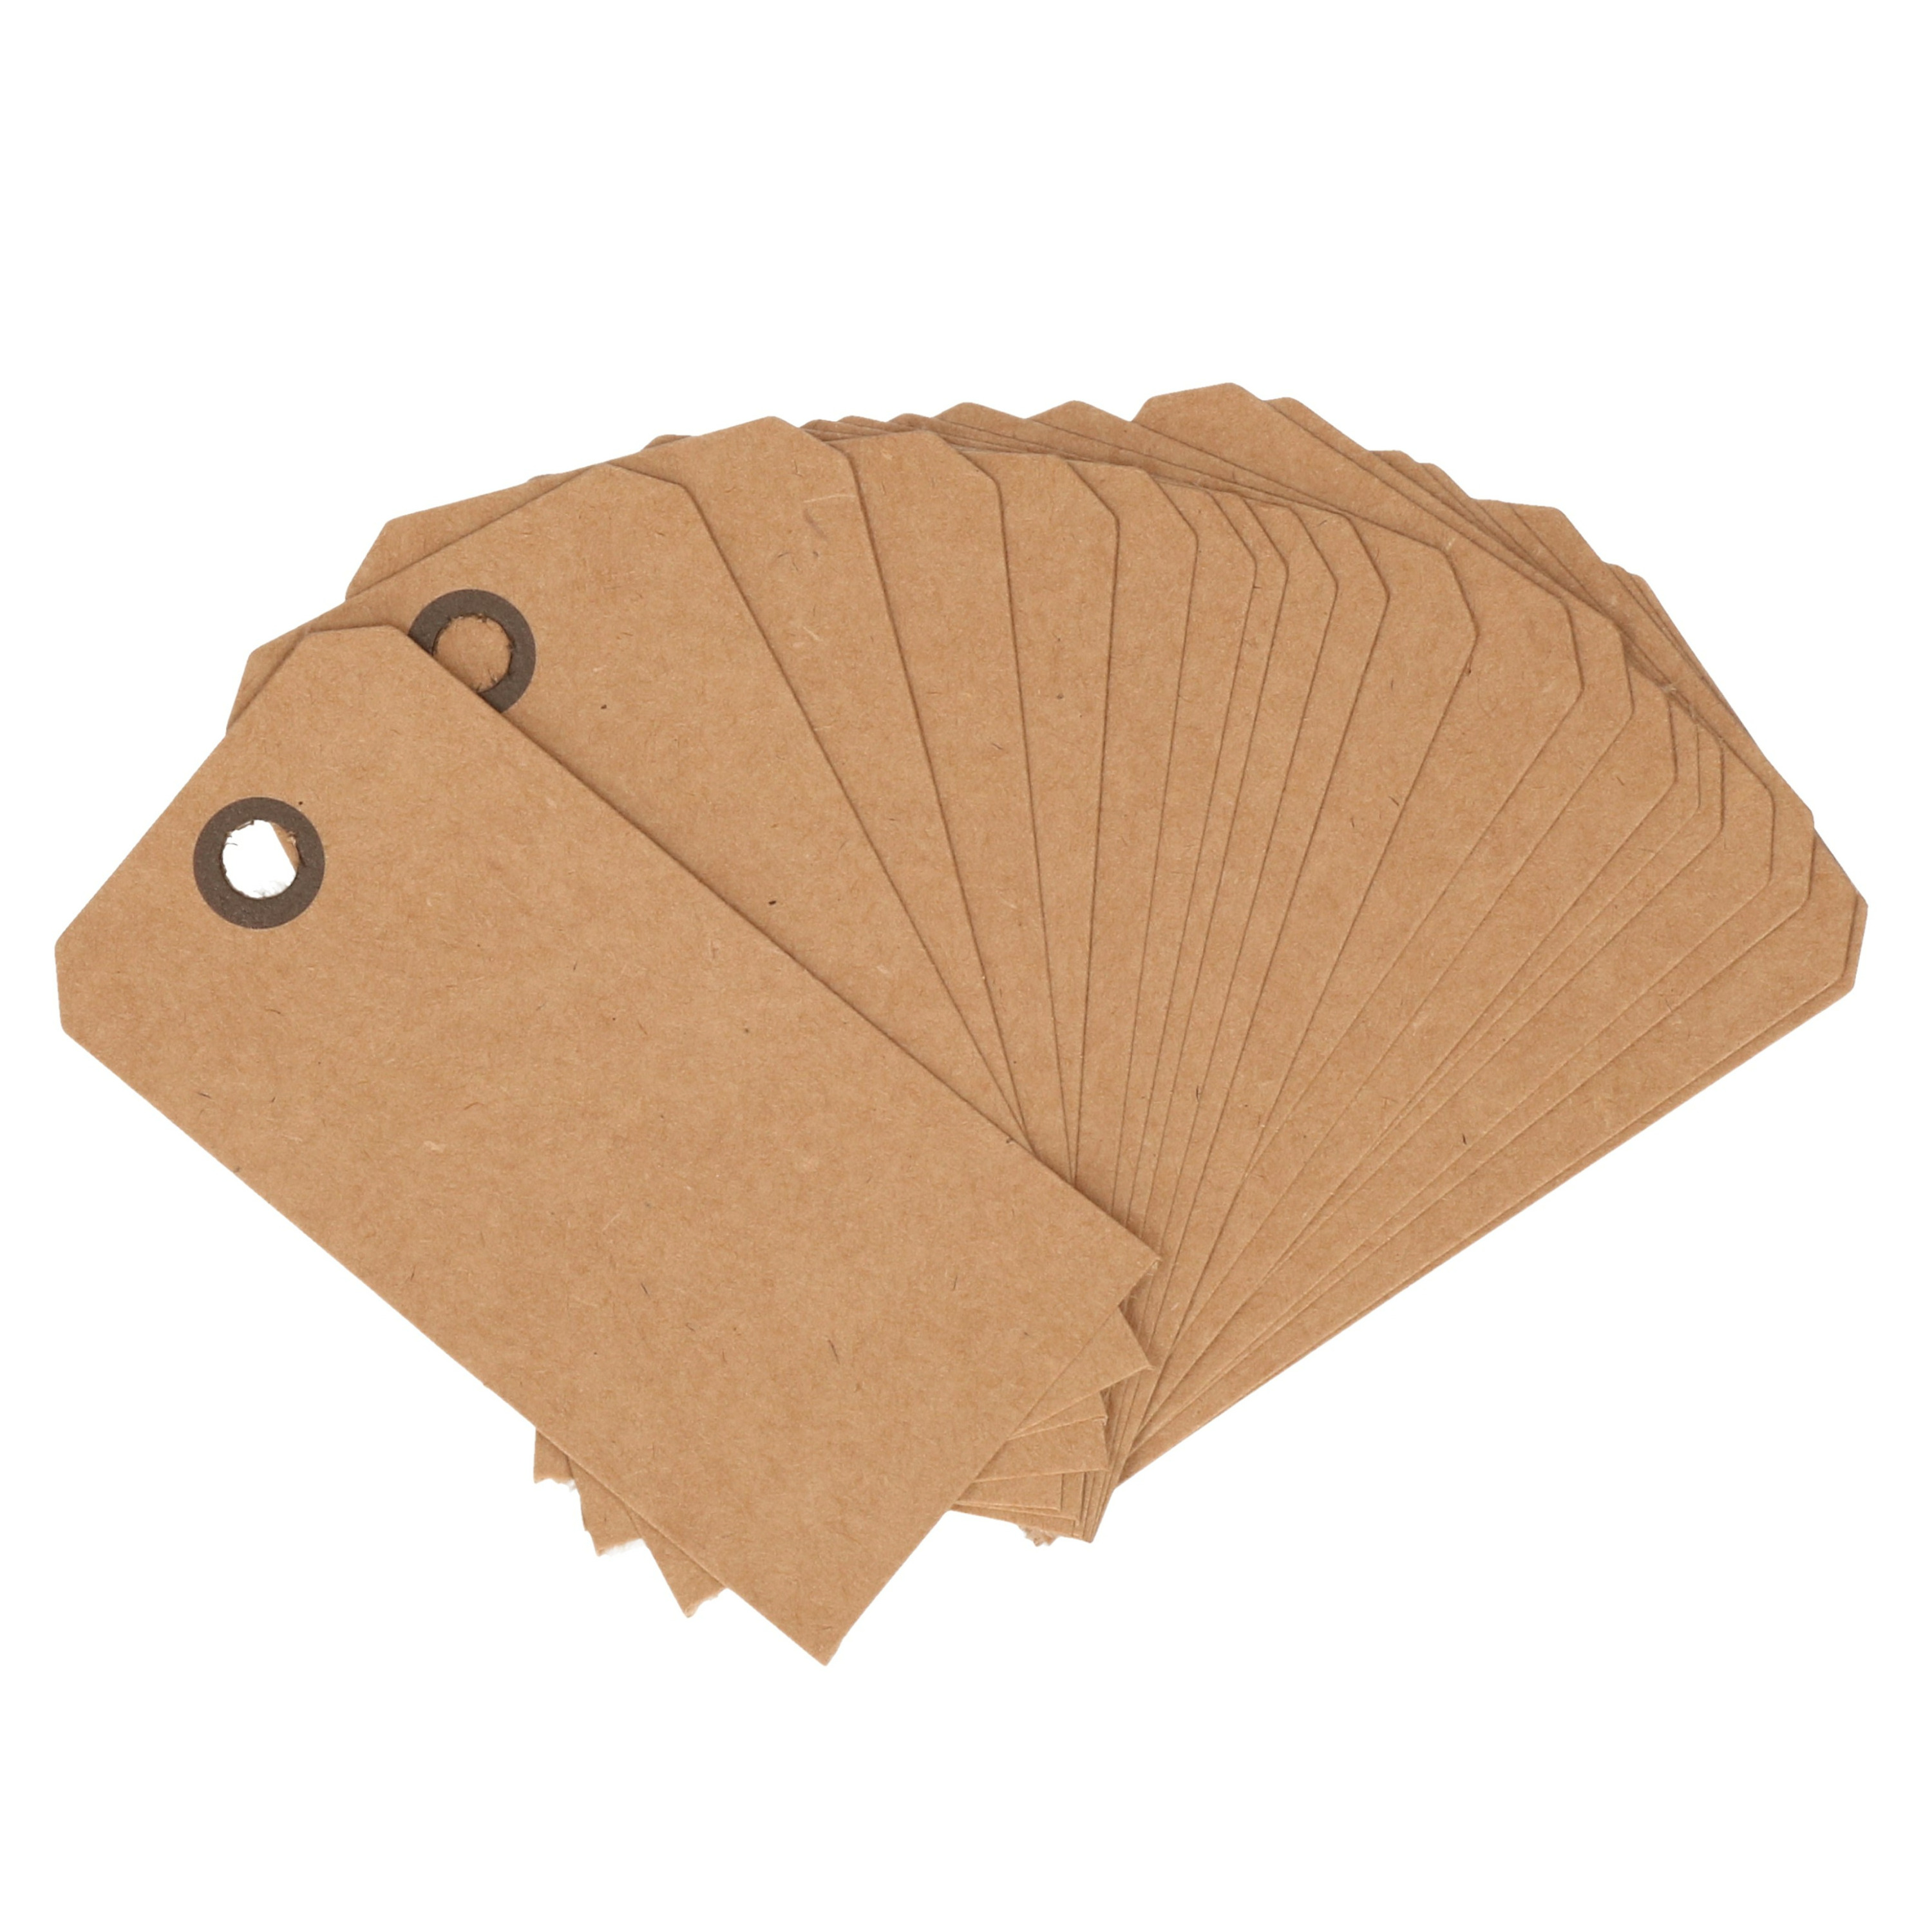 Cadeau tags-labels kraftpapier-karton 40x stuks 7 x 4 cm kado etiketten